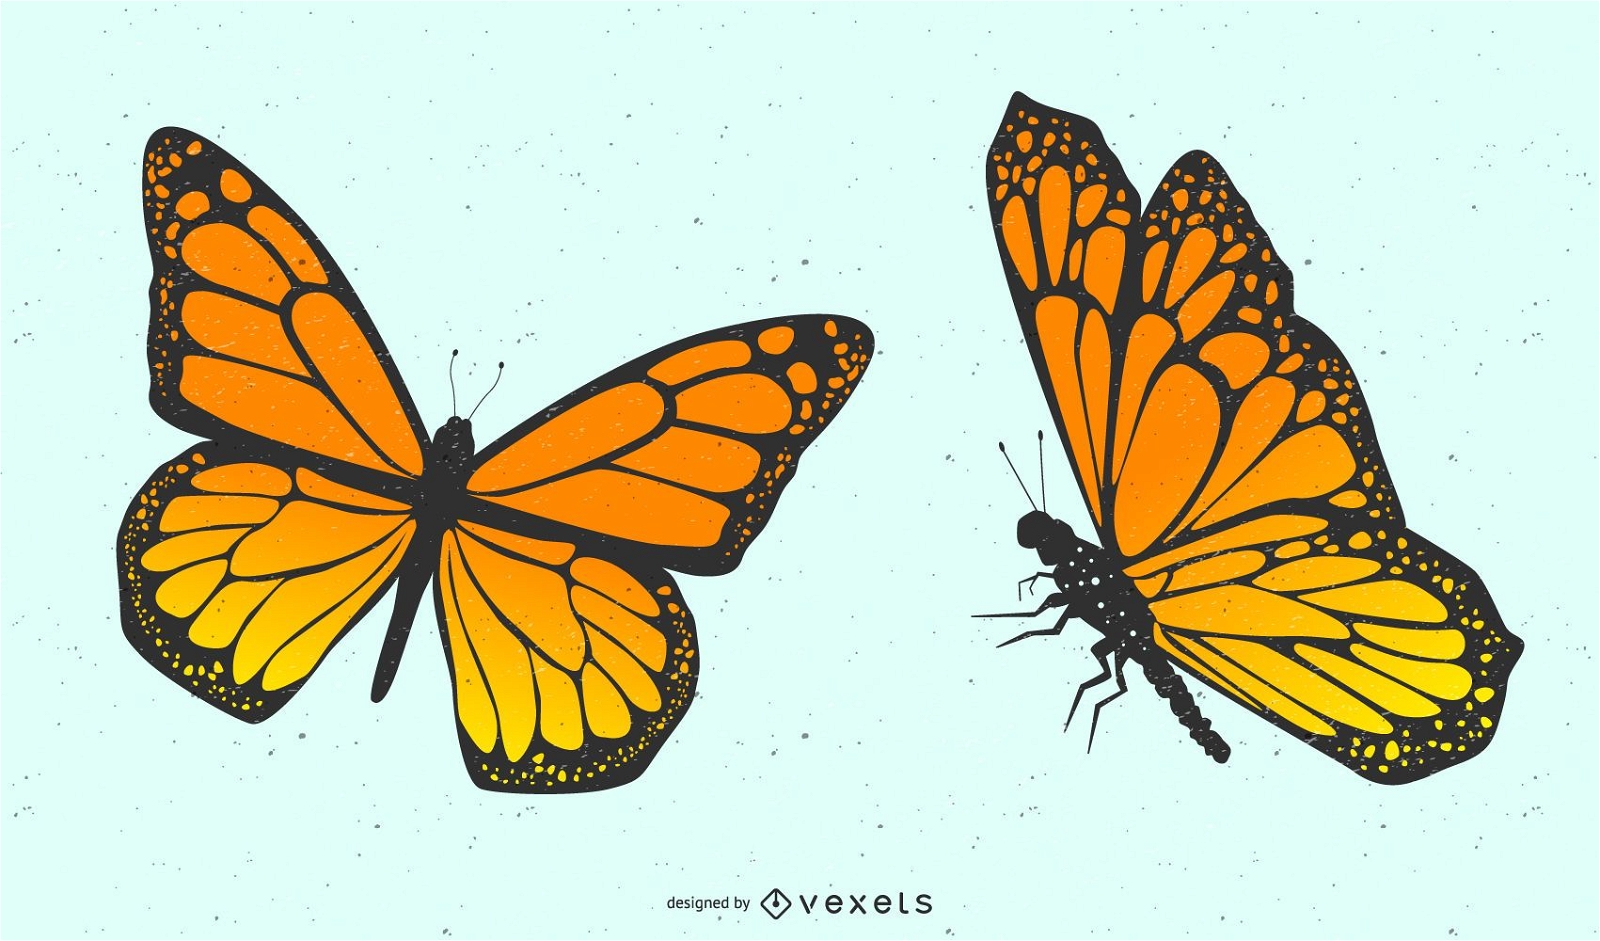 Pair of Butterflies